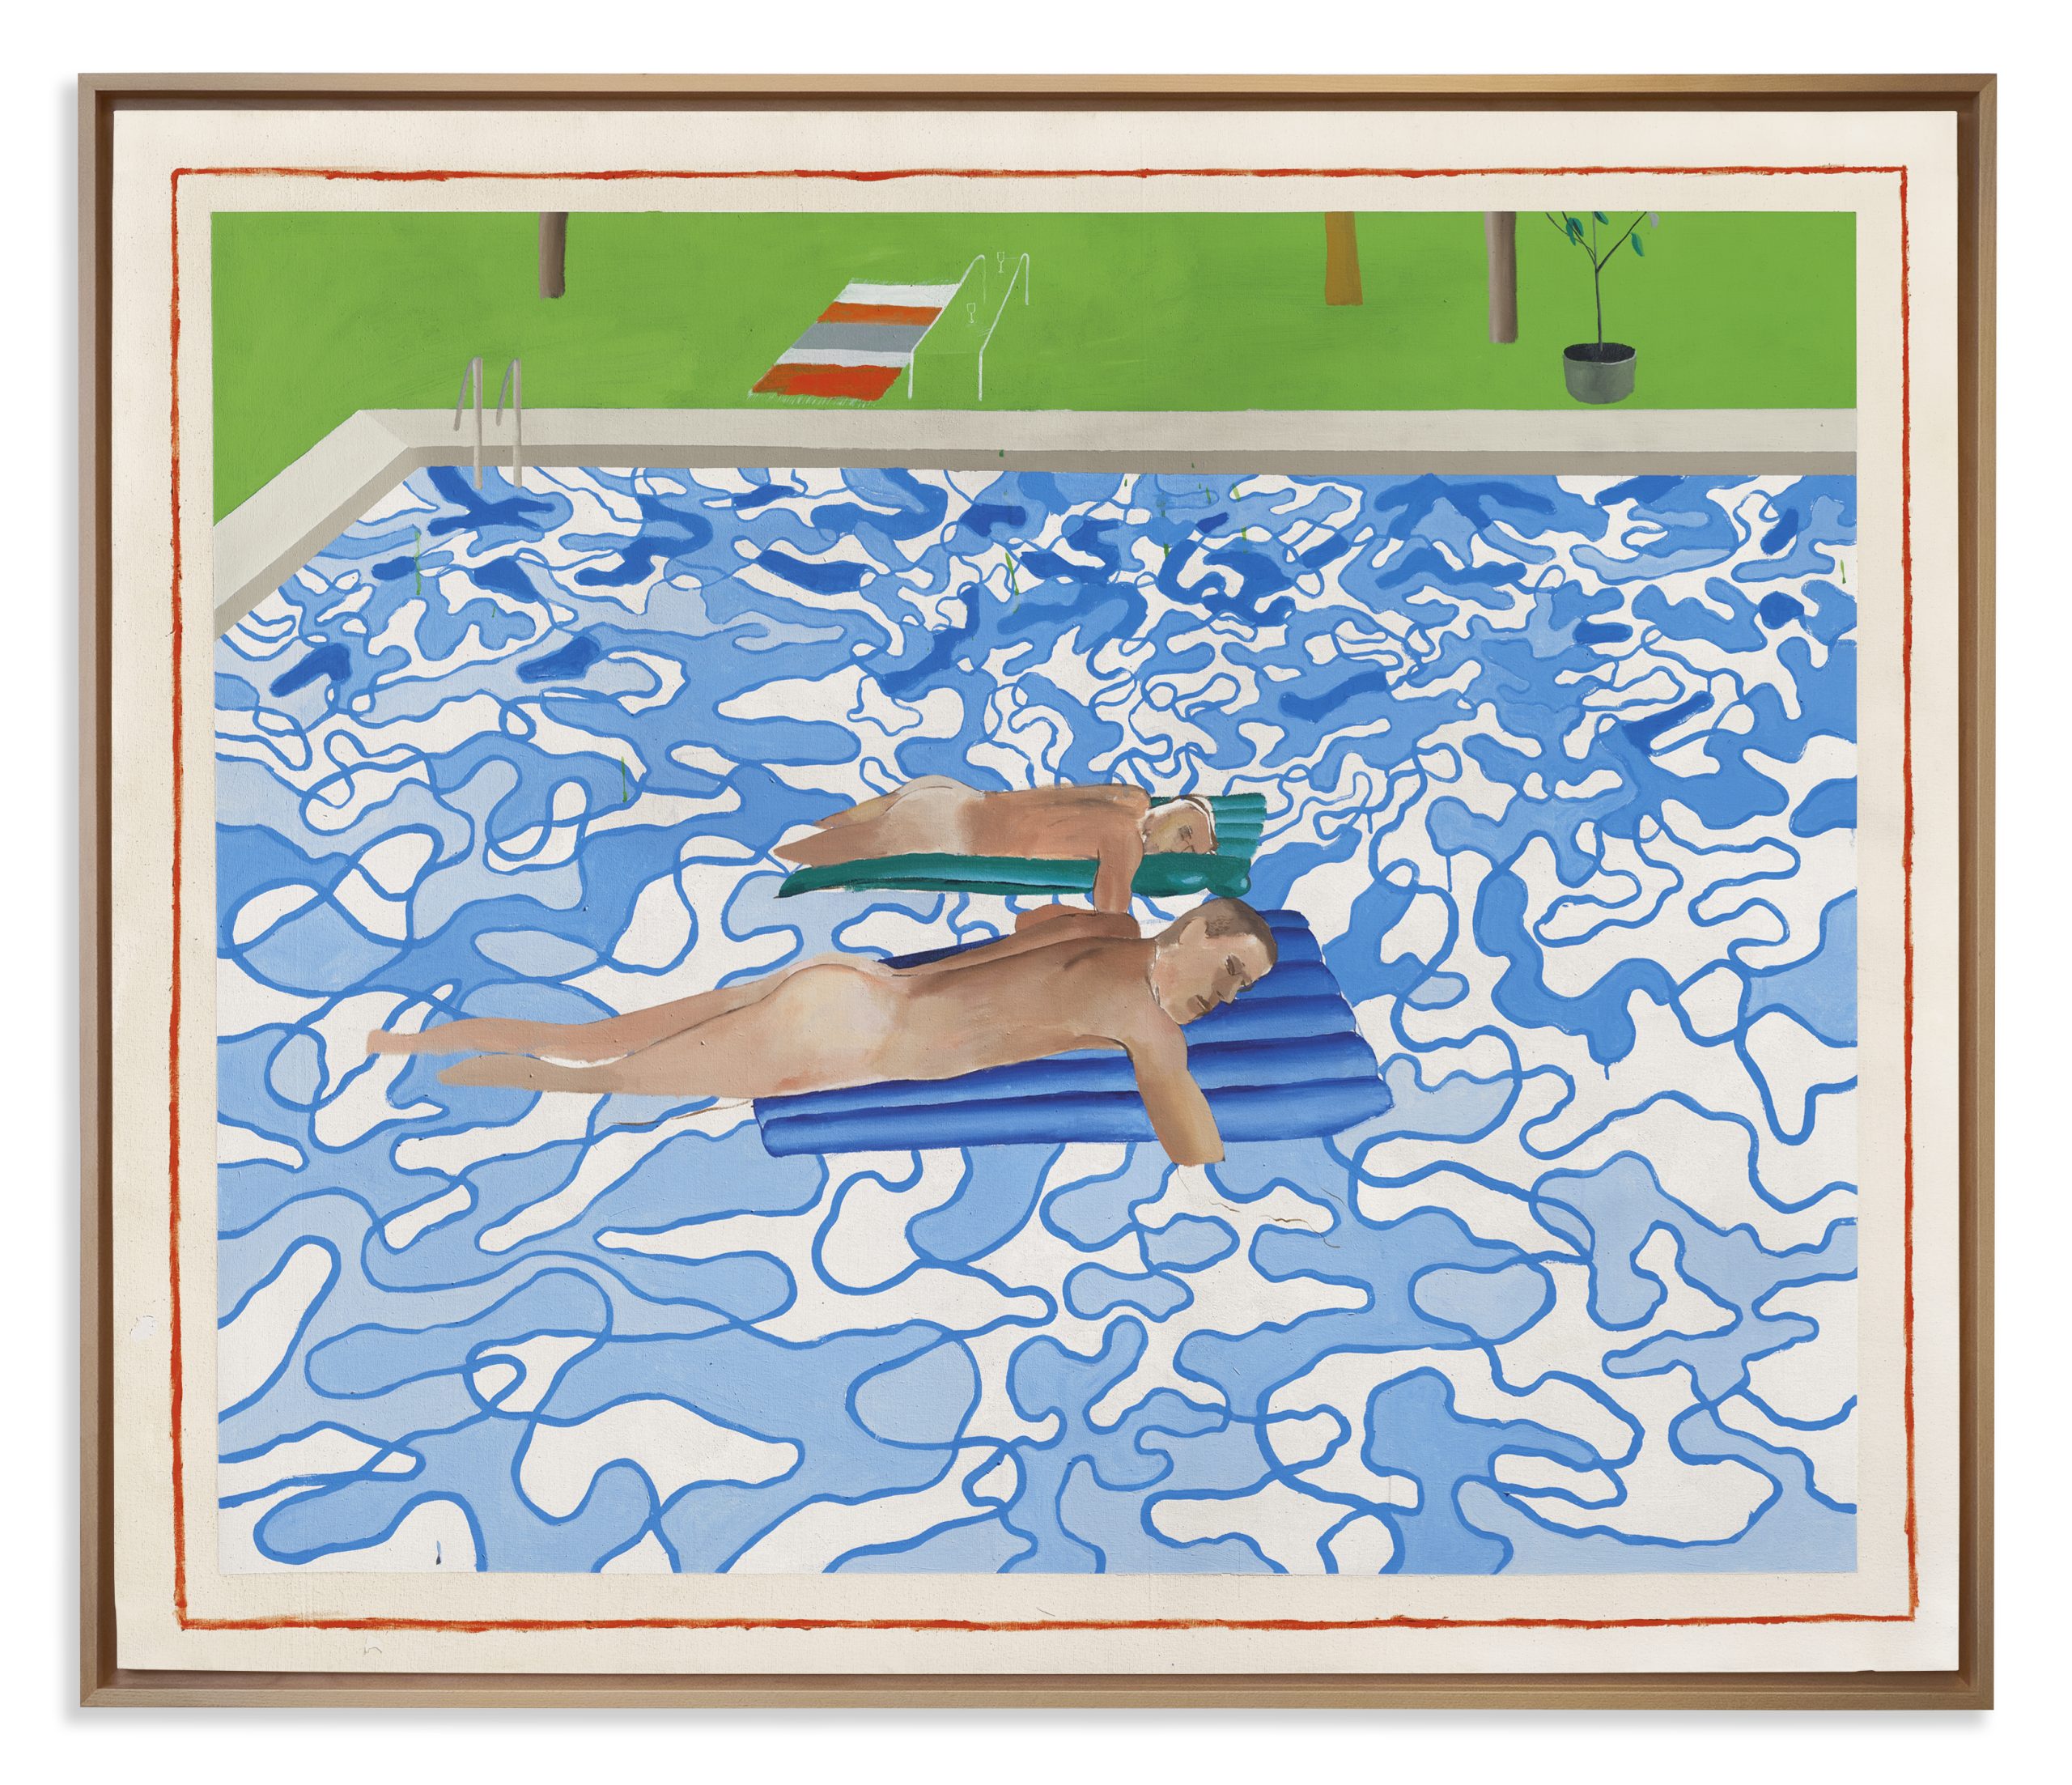 Una delle prime ‘piscine’ di di David Hockney arriva in asta da Christie’s a marzo. Stima 16 milioni di sterline